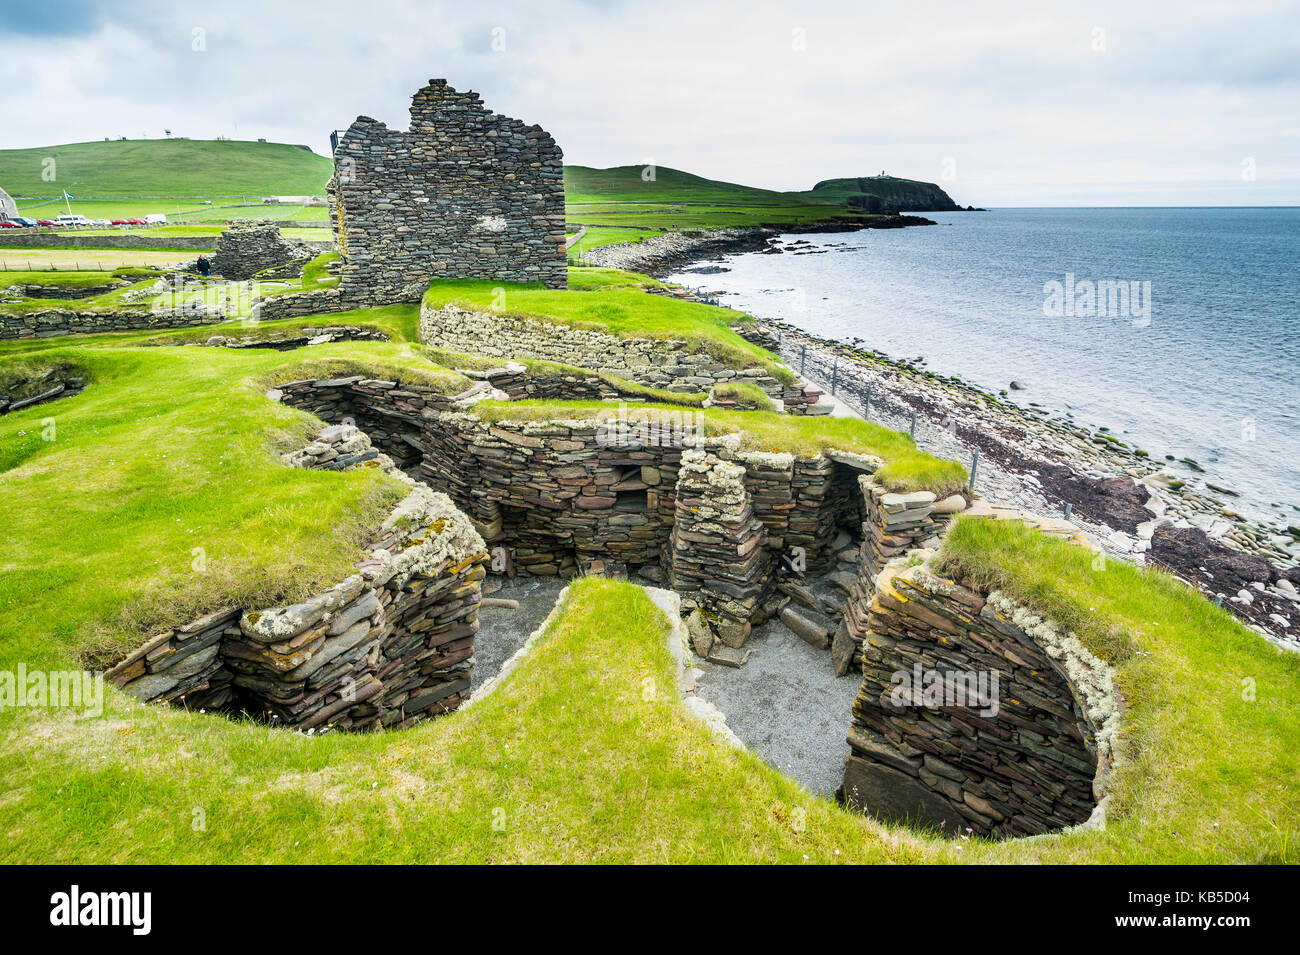 Jarlshof preistorici sito archeologico, isole Shetland Scozia, Regno Unito, Europa Foto Stock